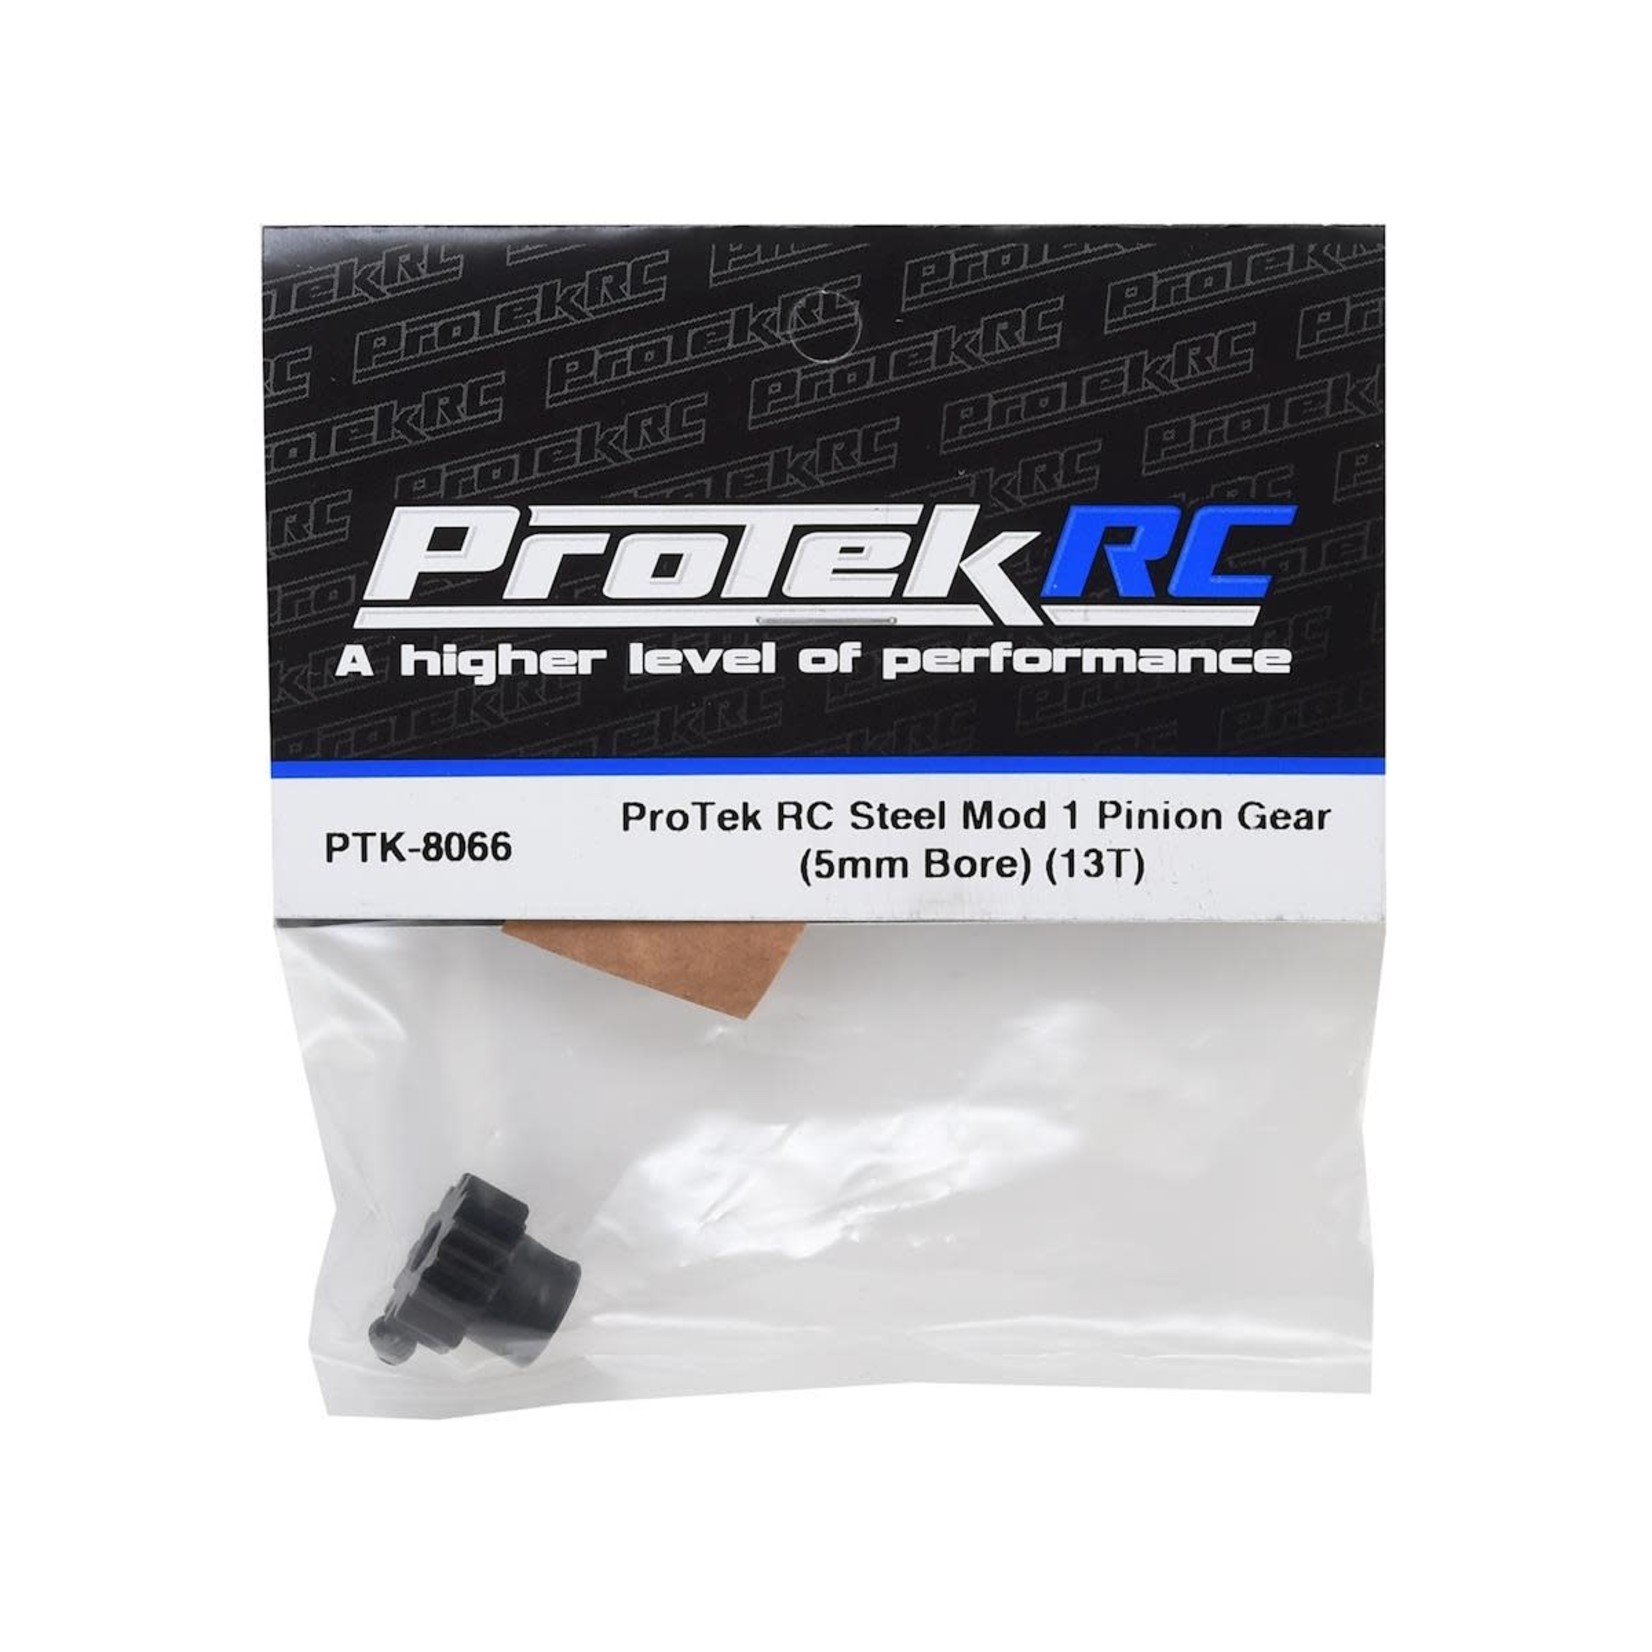 ProTek RC ProTek RC Steel Mod 1 Pinion Gear (5mm Bore) (13T) #PTK-8066